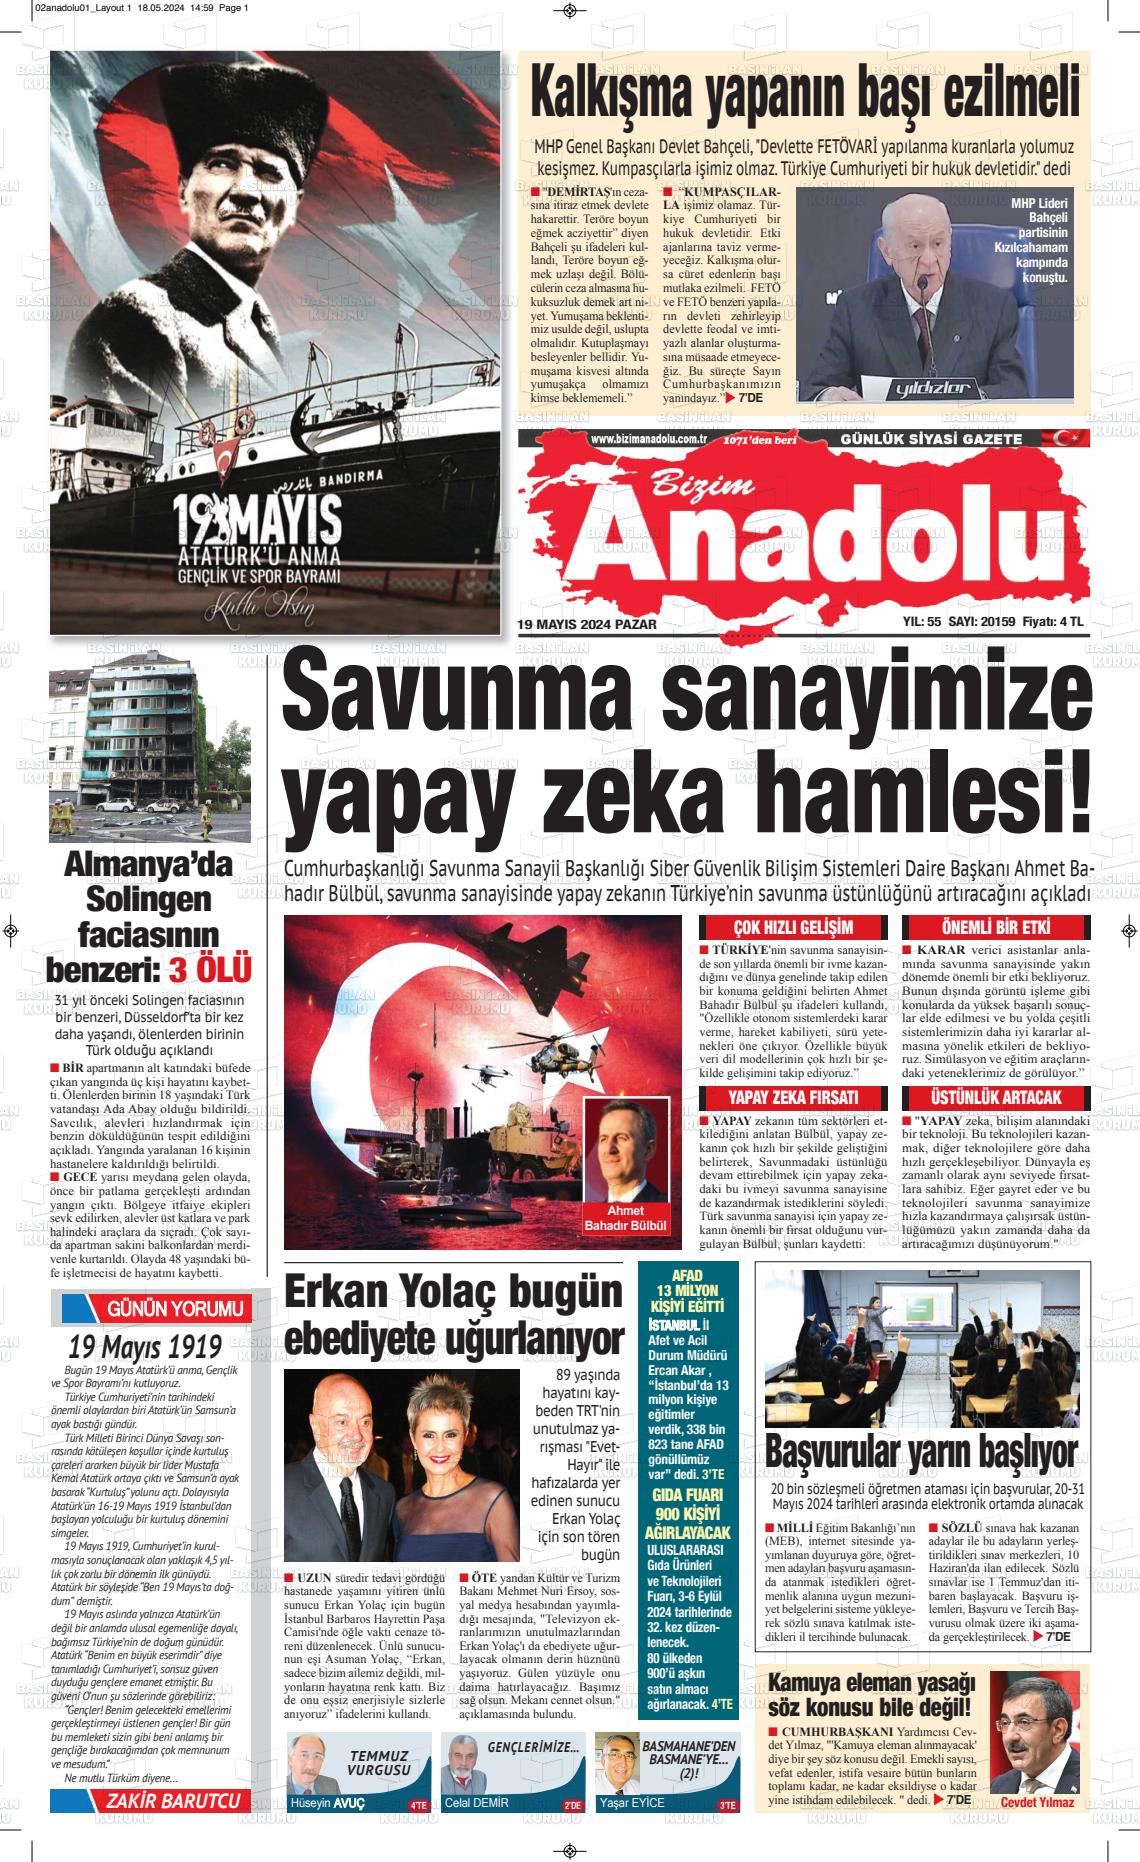 BİZİM ANADOLU Gazetesi